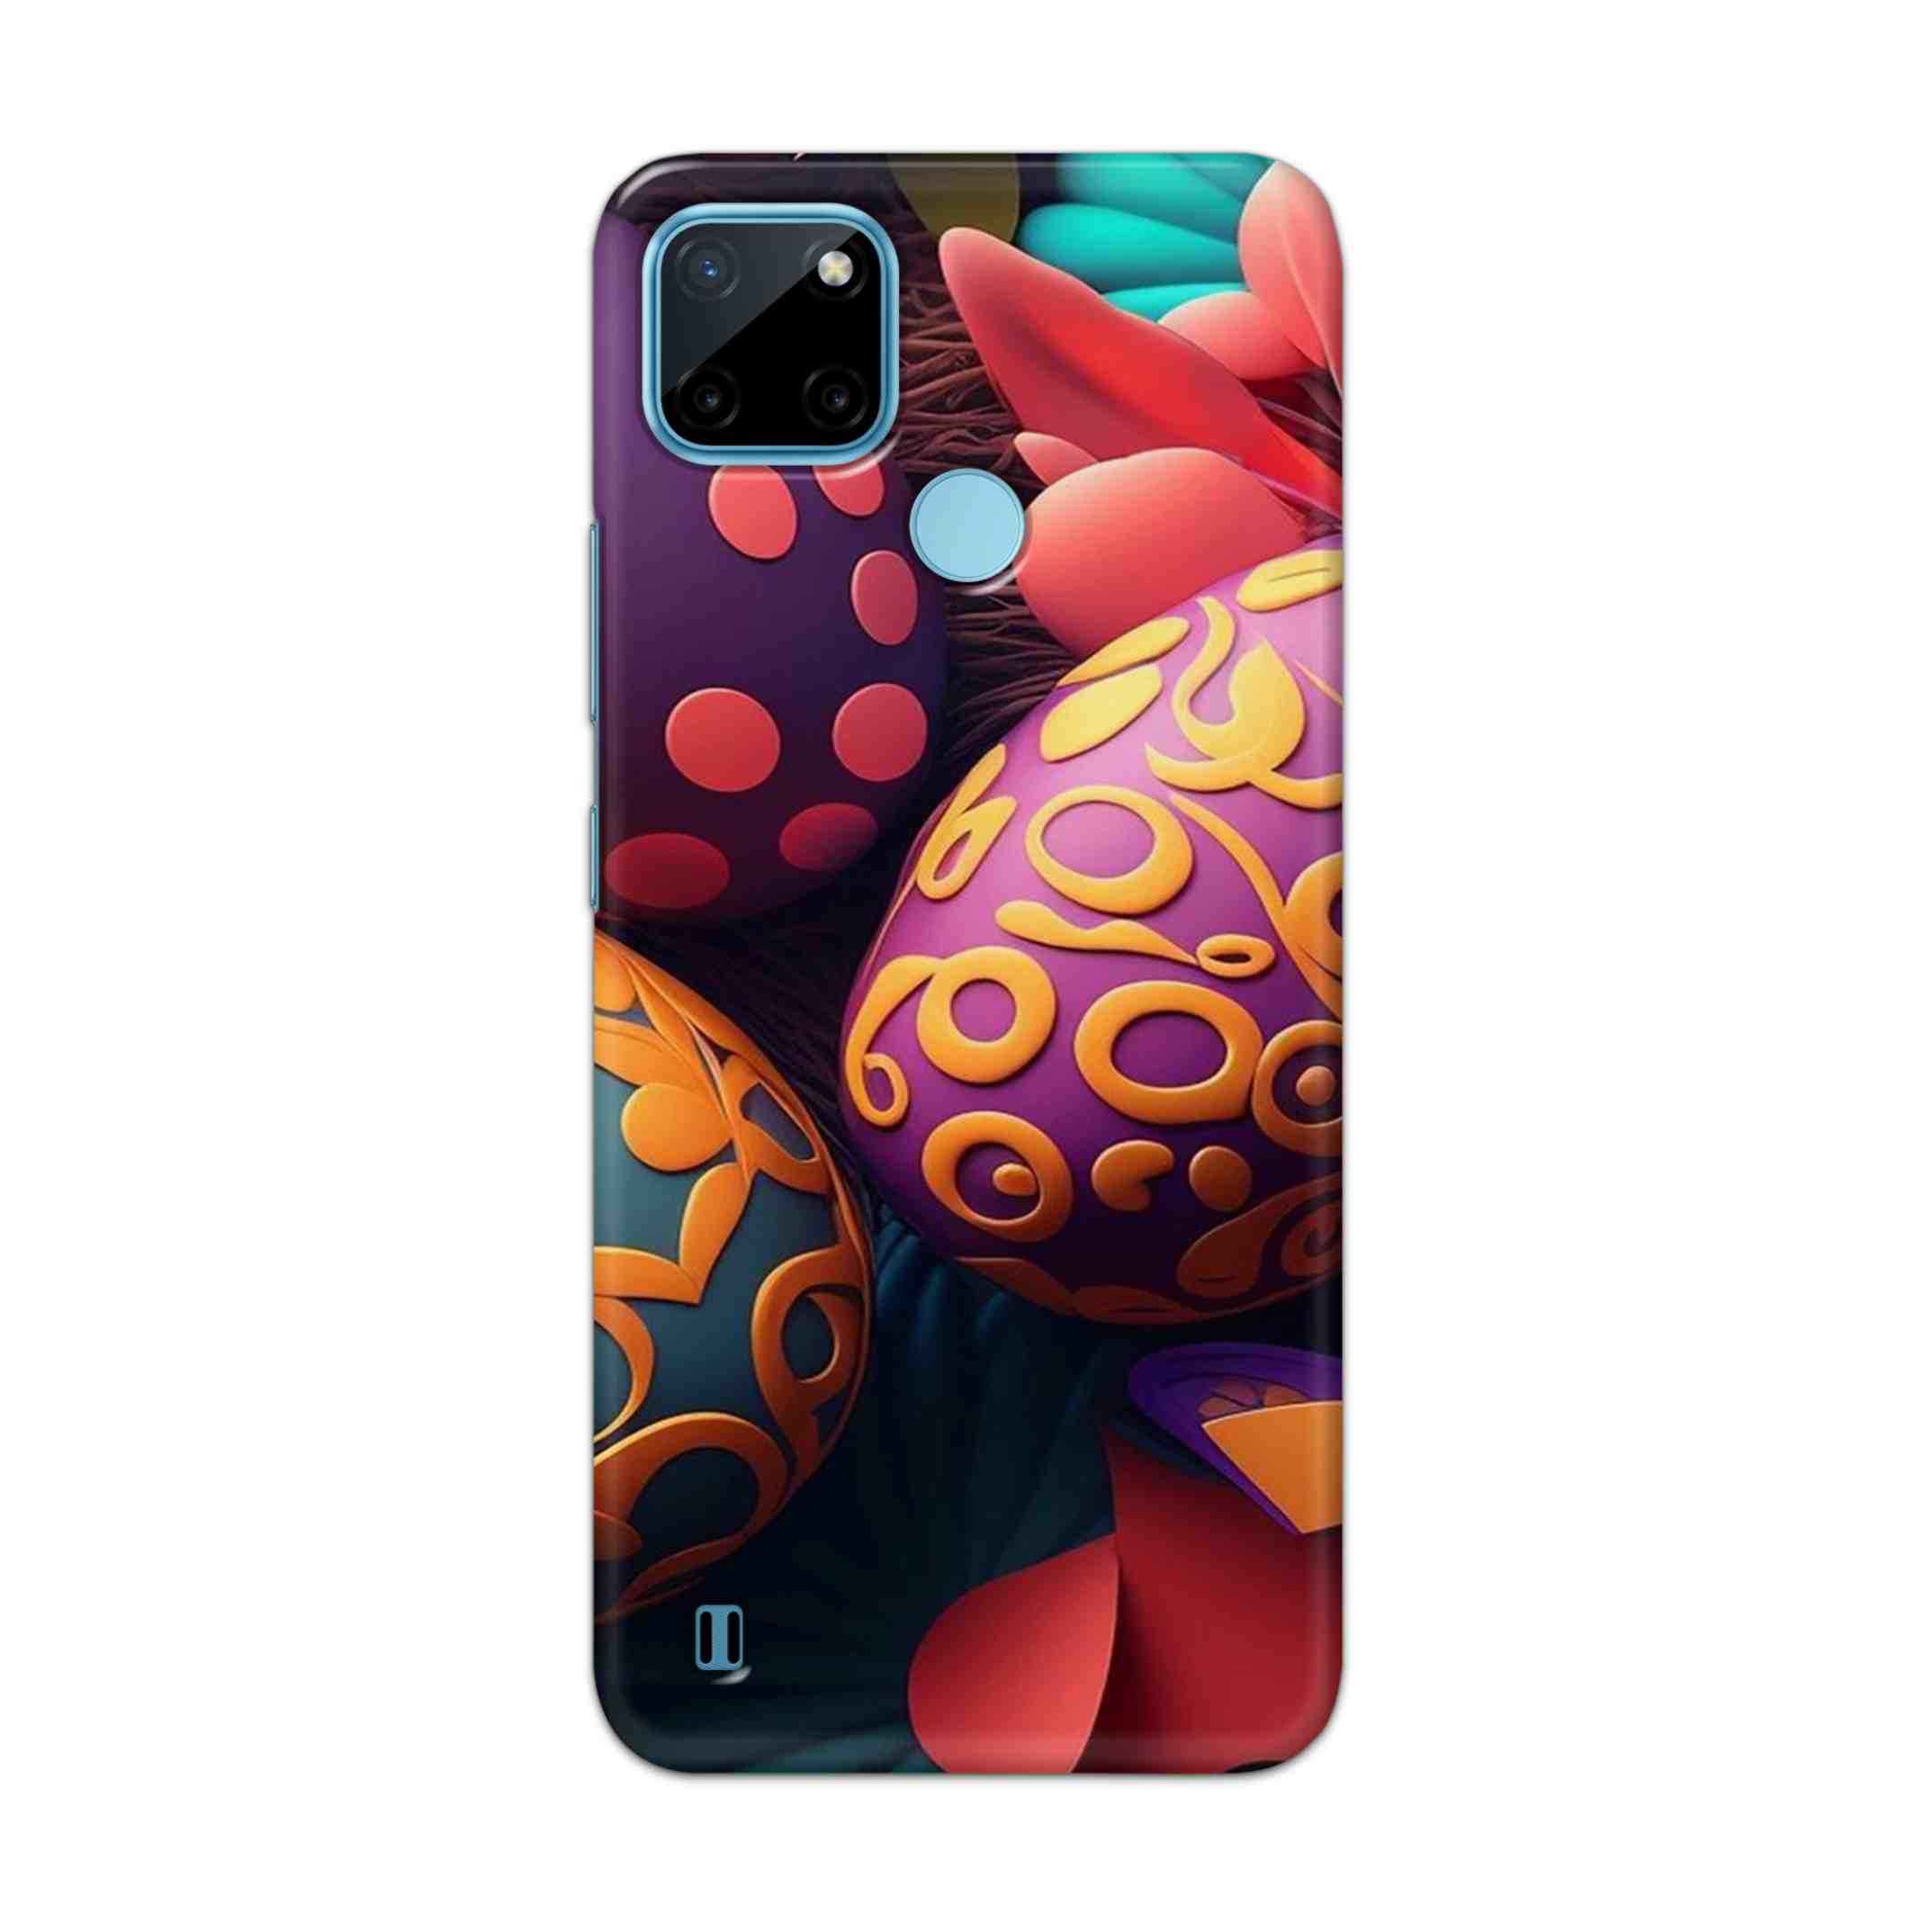 Buy Easter Egg Hard Back Mobile Phone Case Cover For Realme C21Y Online